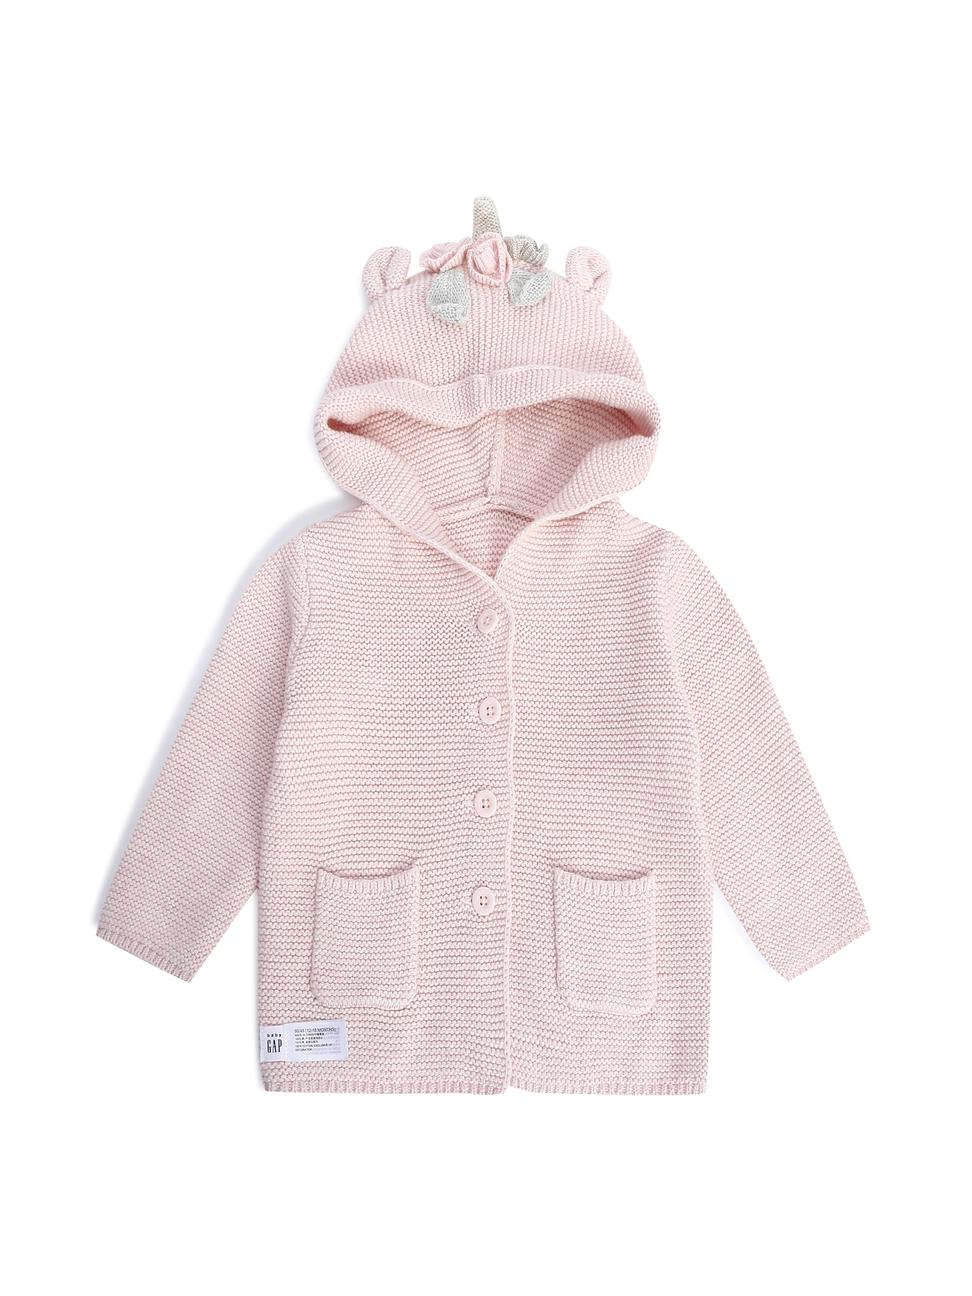 嬰兒裝|可愛熊耳花朵針織衫毛衣-淺粉色